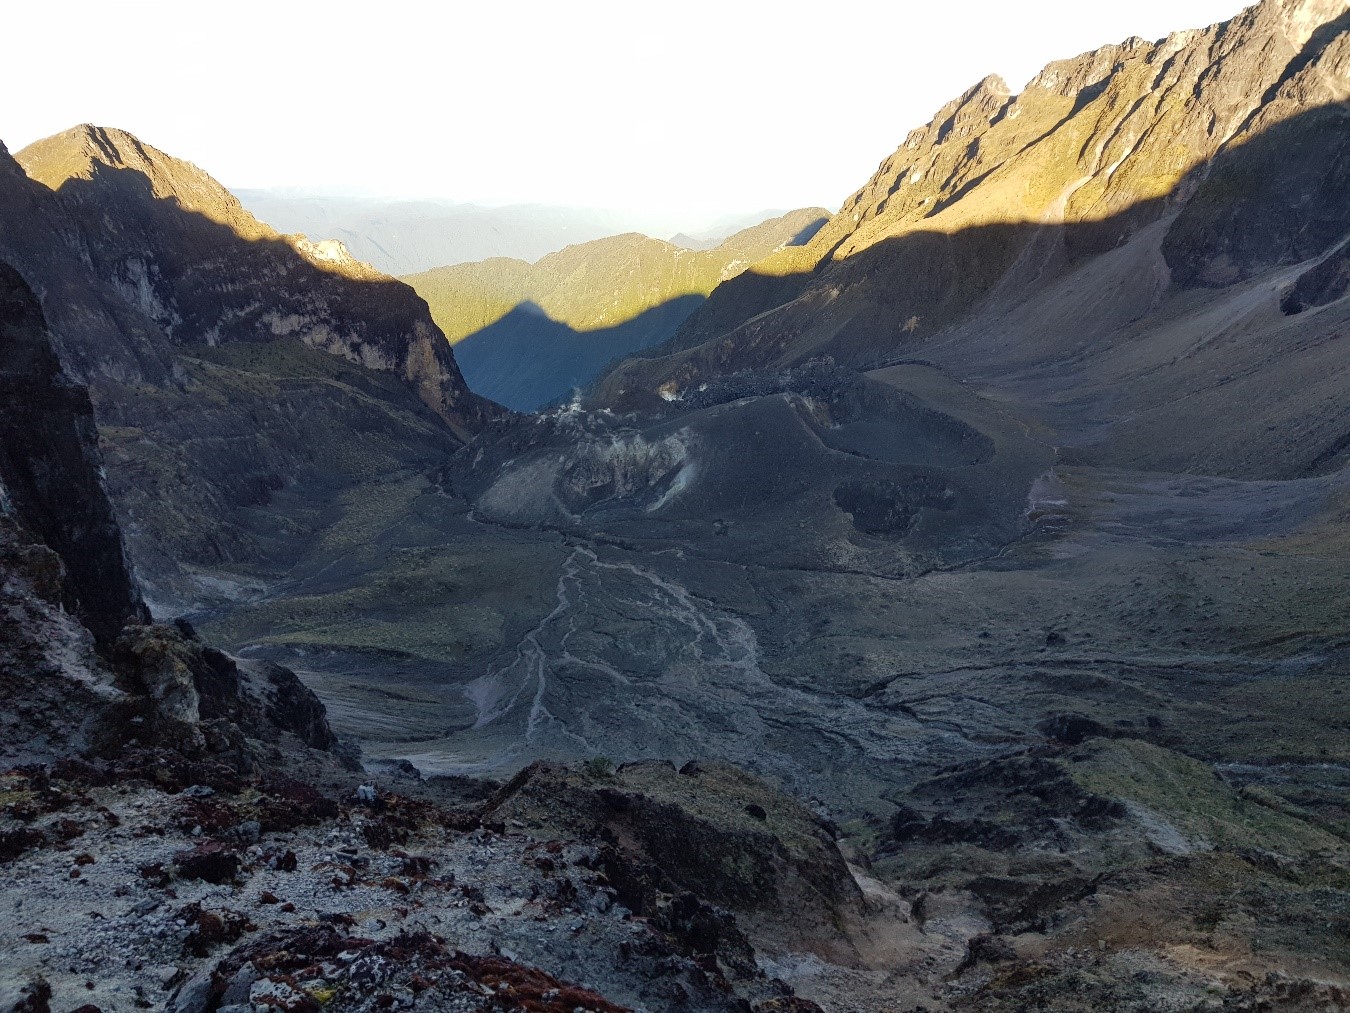 Cartografía e Imágenes térmicas en la zona del domo Cristal, Volcán Guagua Pichincha